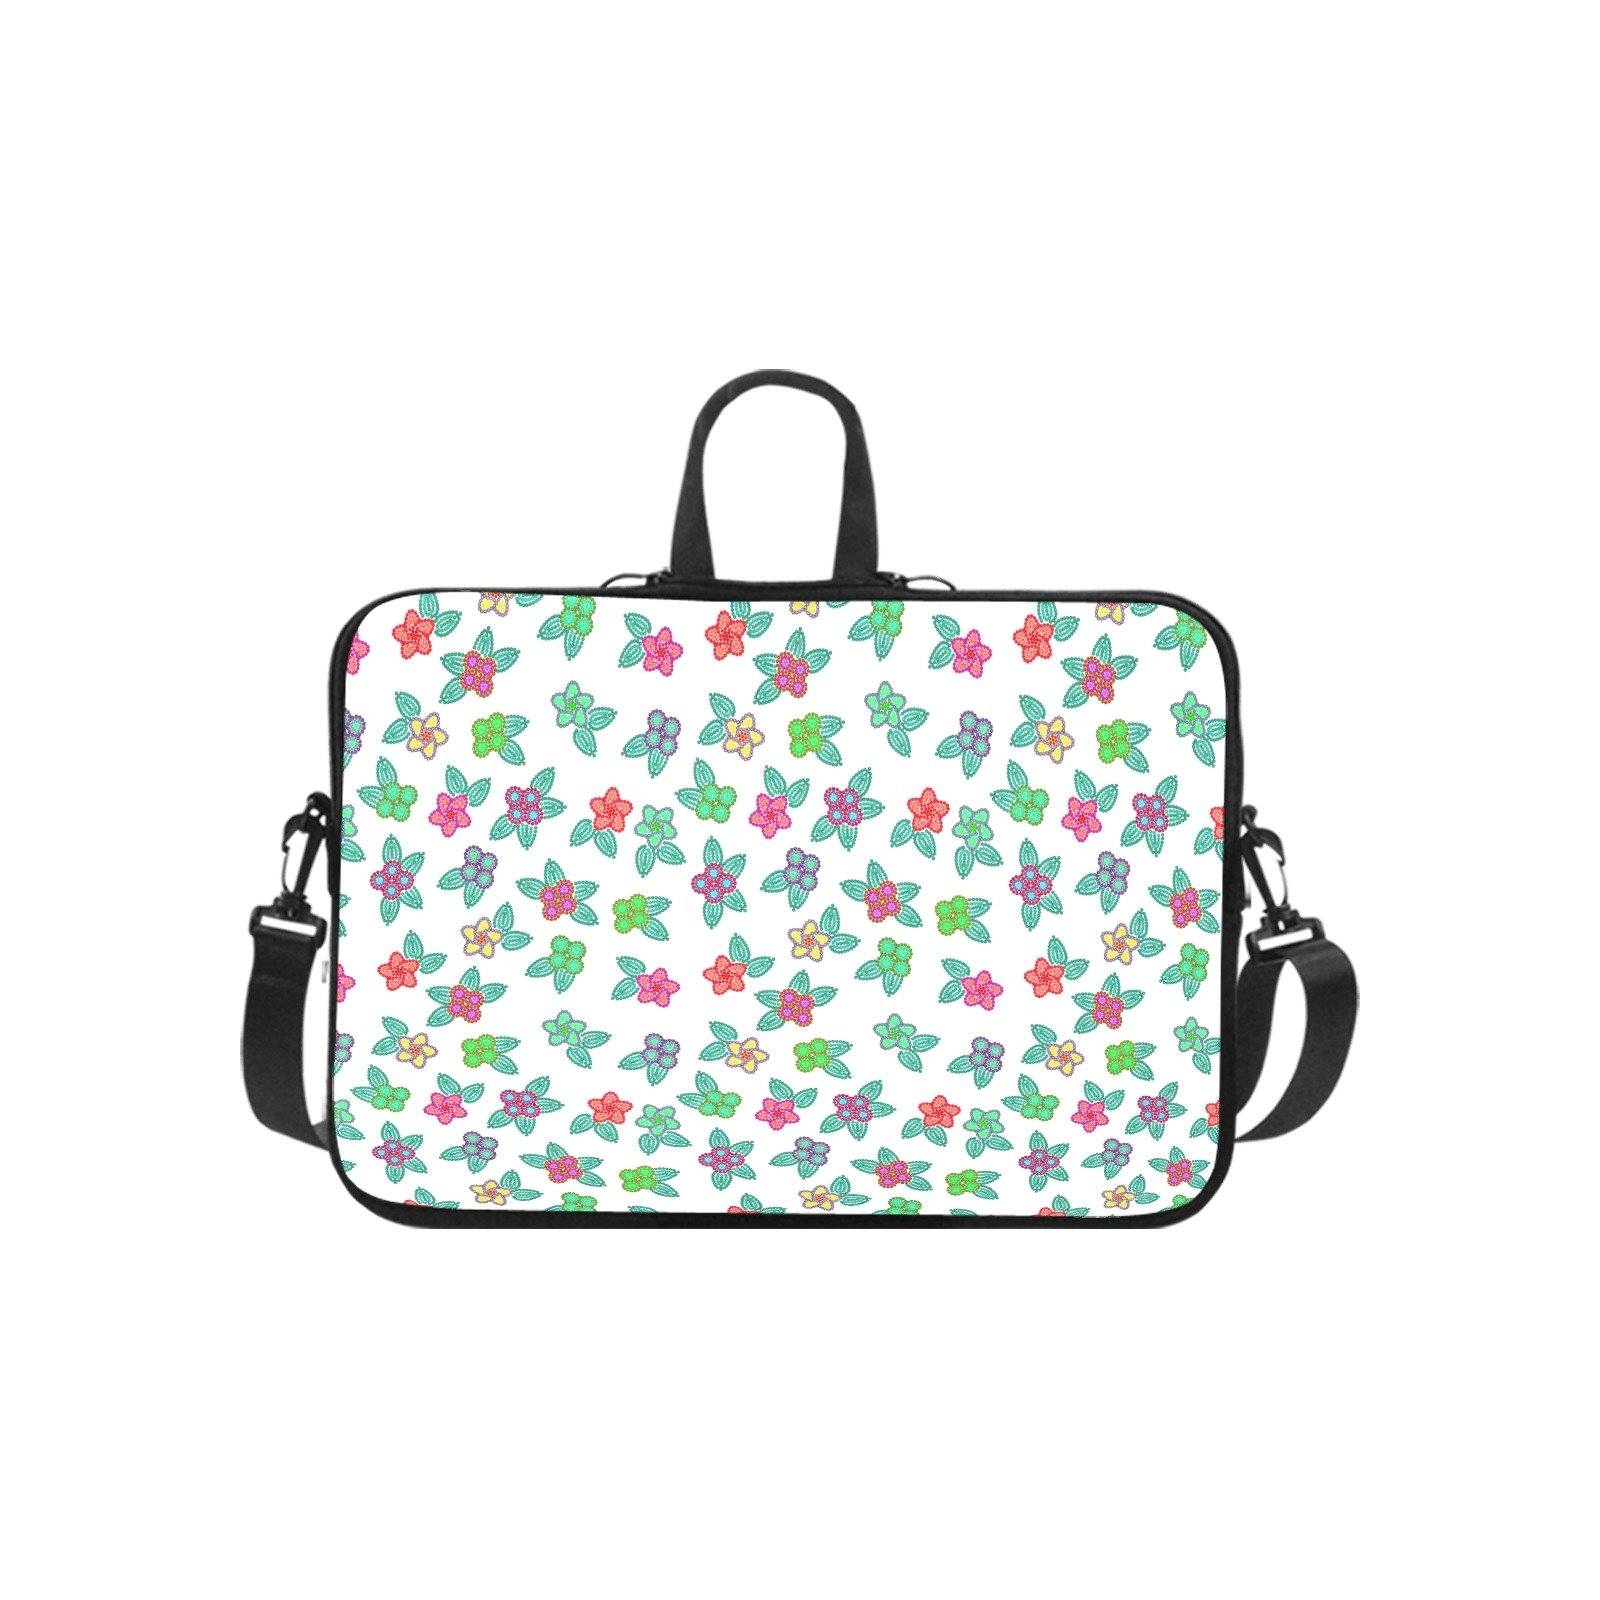 Berry Flowers White Laptop Handbags 17" bag e-joyer 